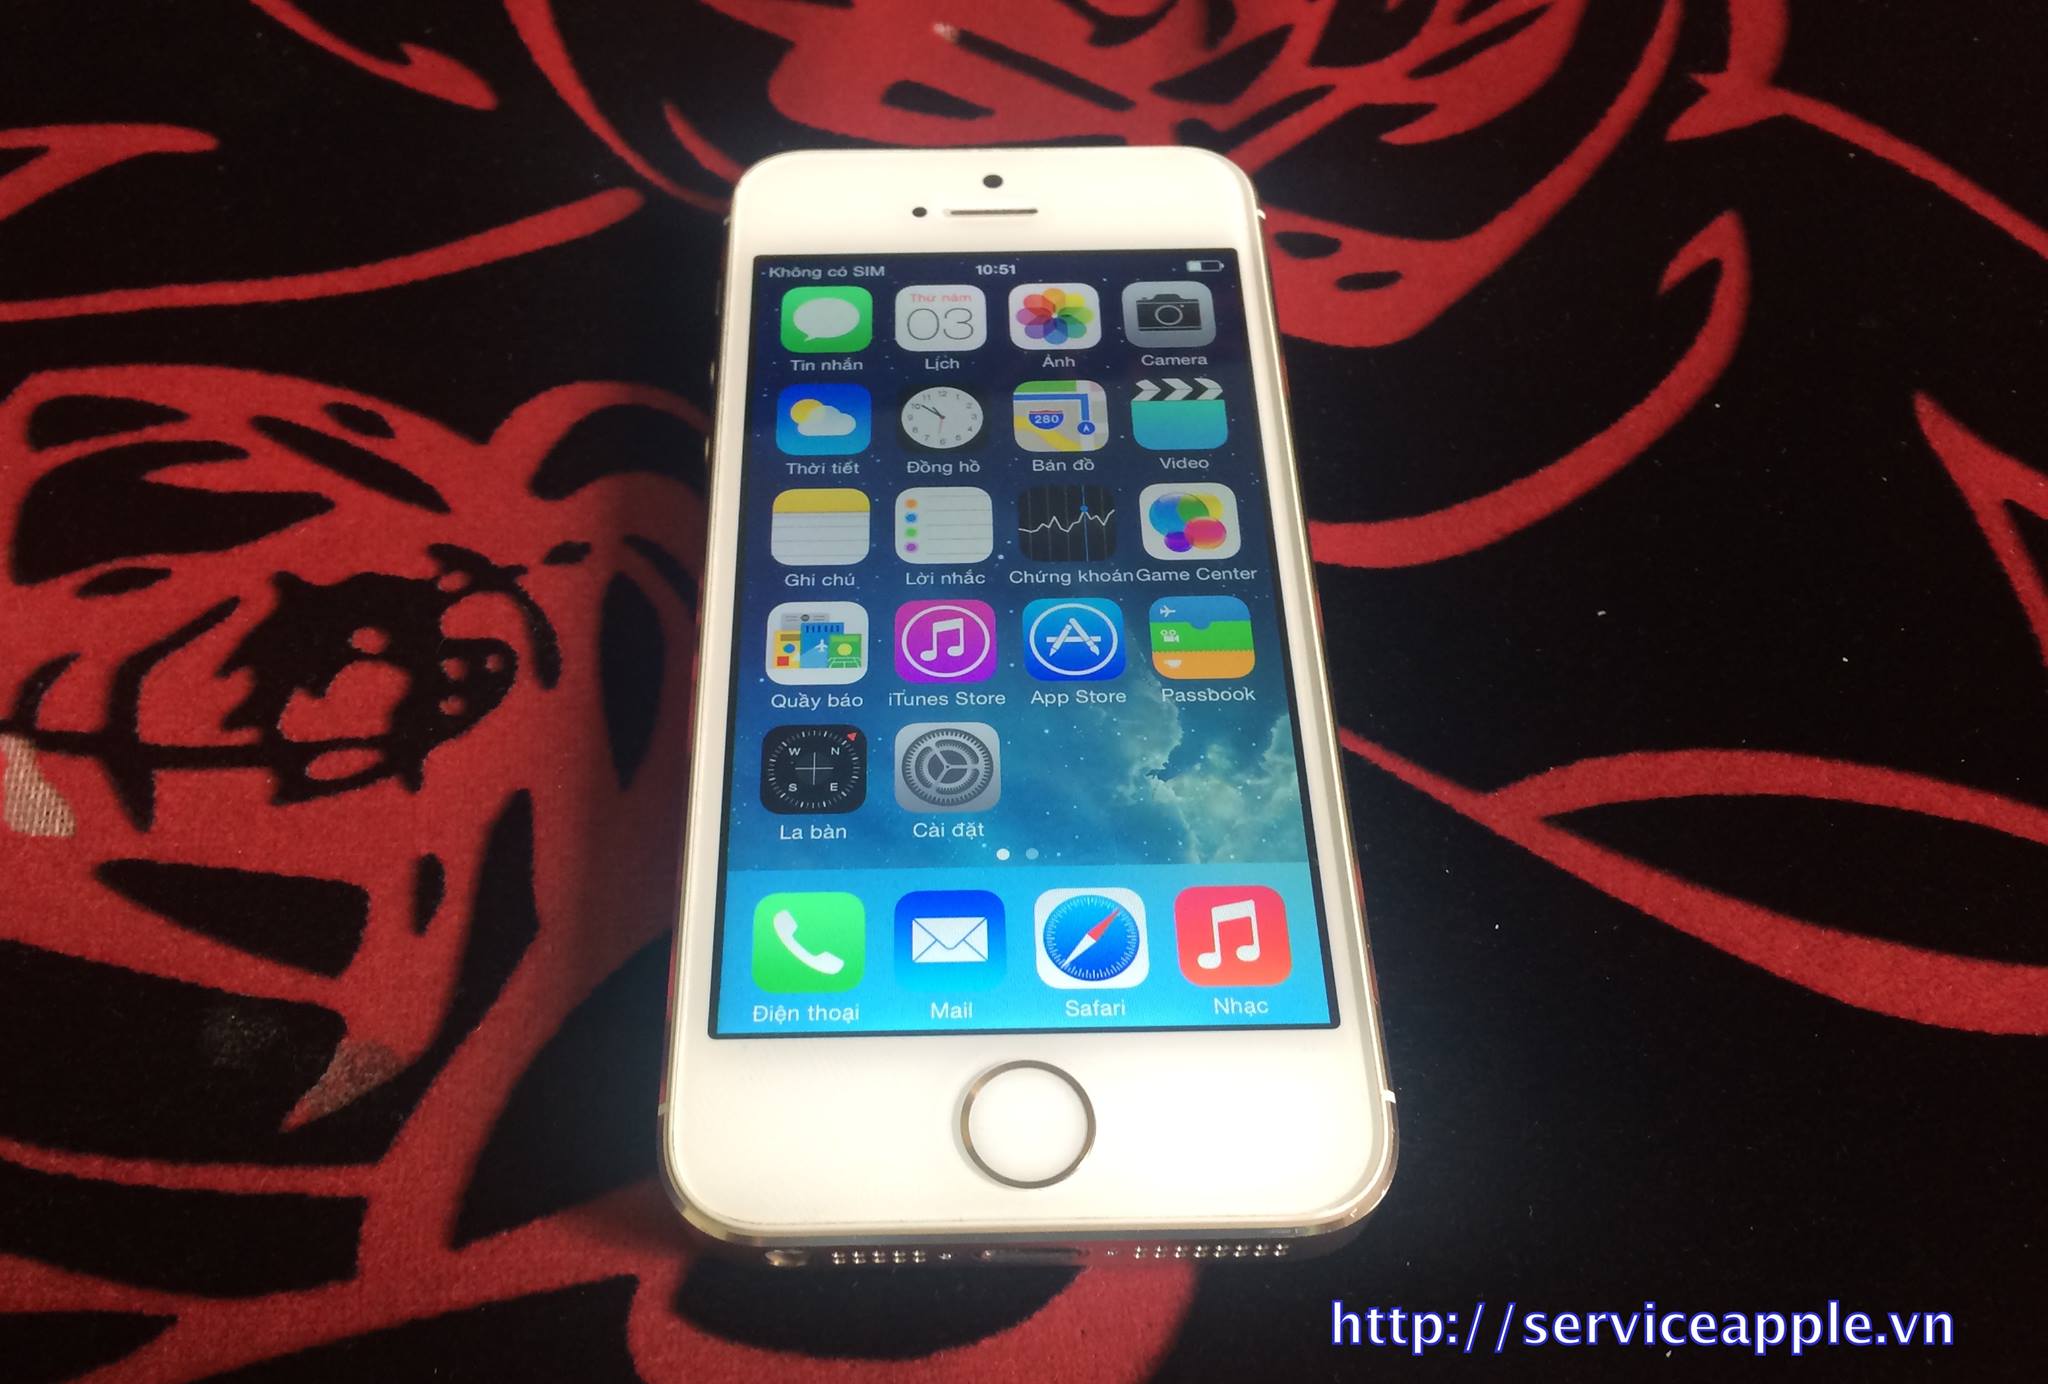 iPhone 5S Gold 16GB hàng đổi bảo hành